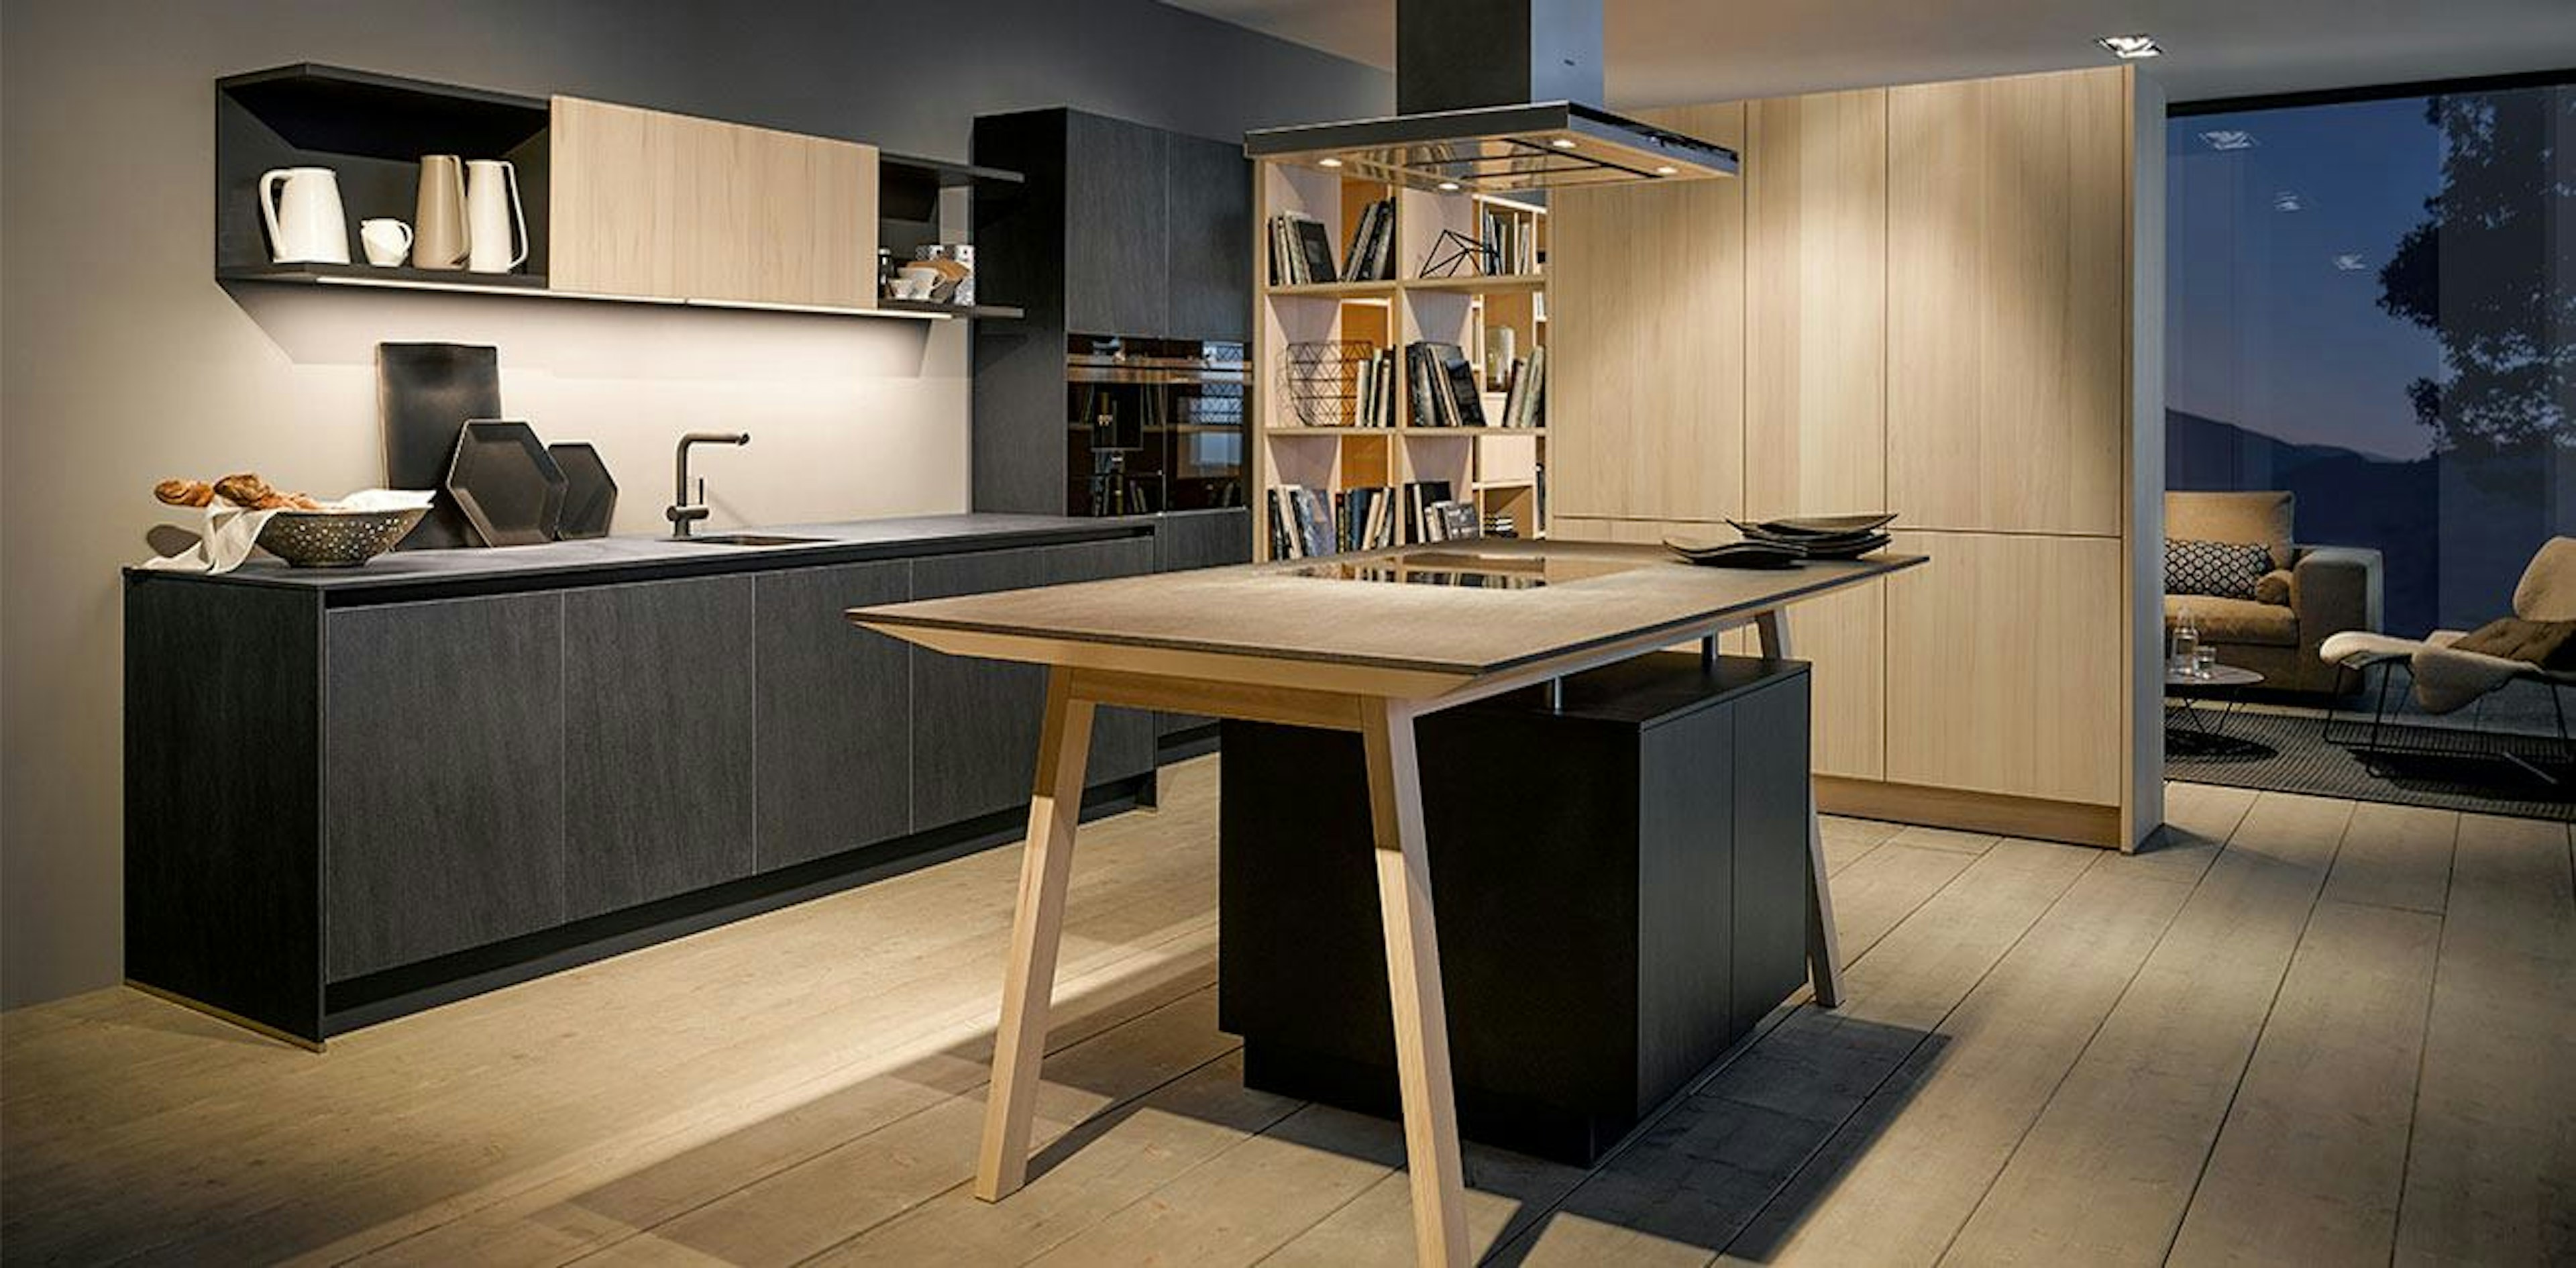 Keuken in donkergrijs grafiet in combinatie met licht hout (beuken).